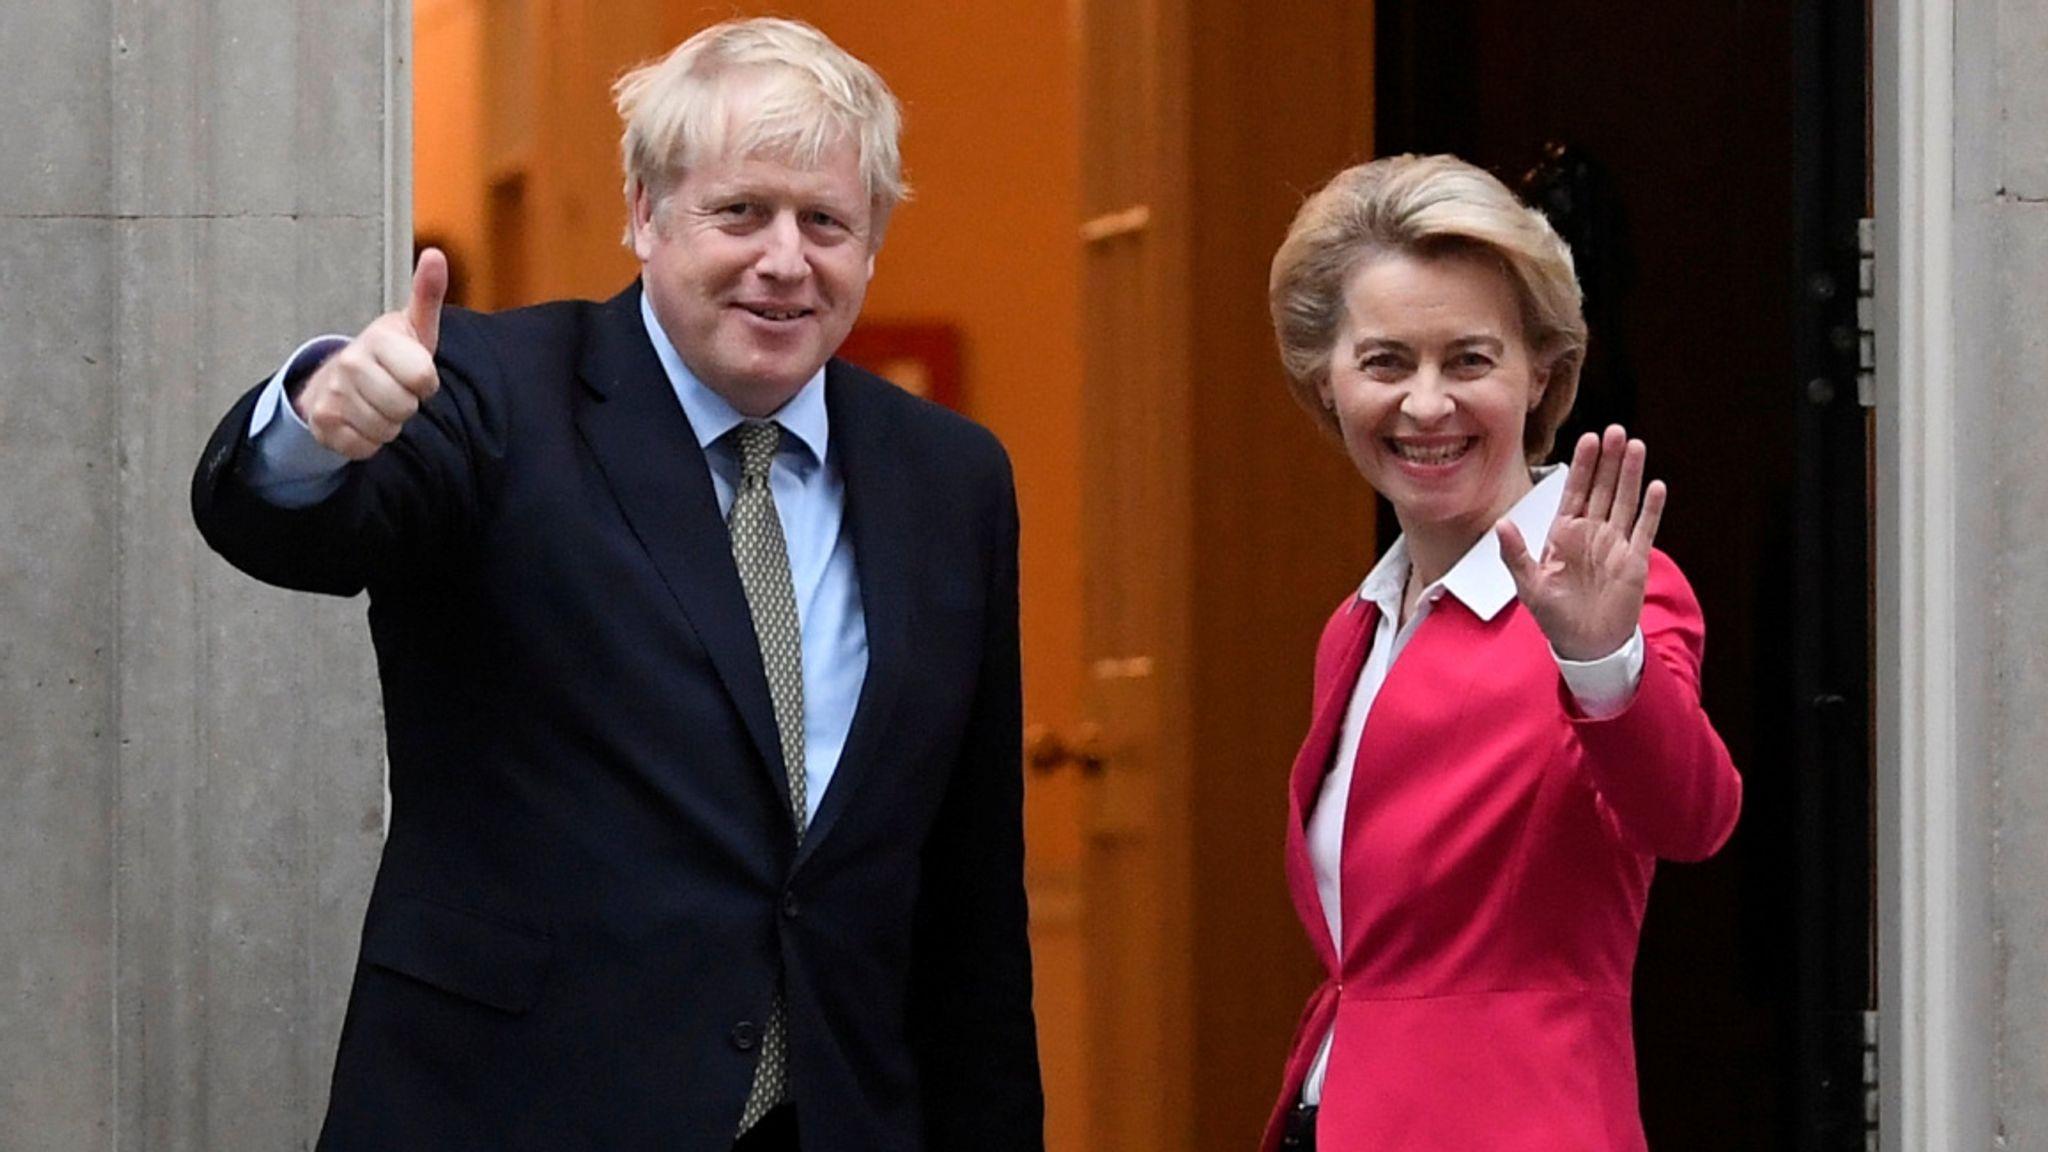 Fon der Lejen i Džonson danas odlučuju o budućnosti odnosa EU i Velike Britanije